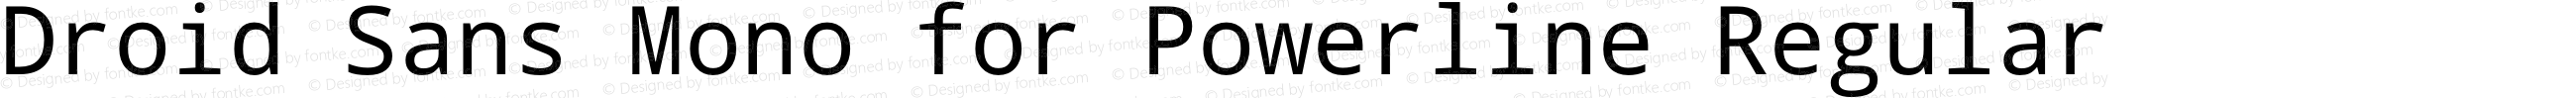 Droid Sans Mono for Powerline Nerd Font Plus Font Awesome Plus Pomicons Mono